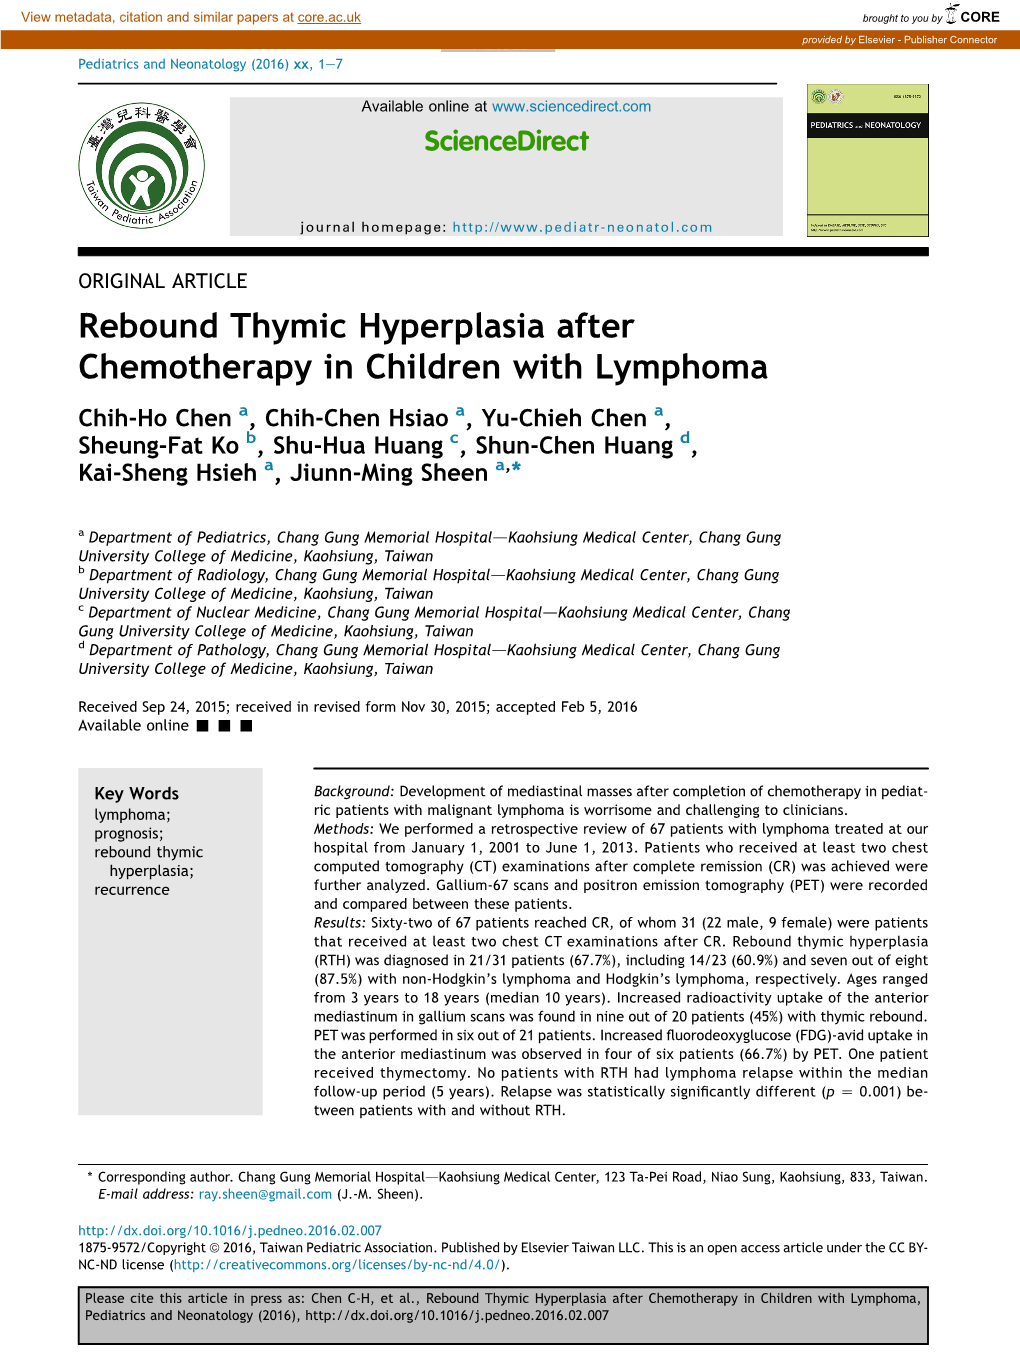 Rebound Thymic Hyperplasia After Chemotherapy in Children